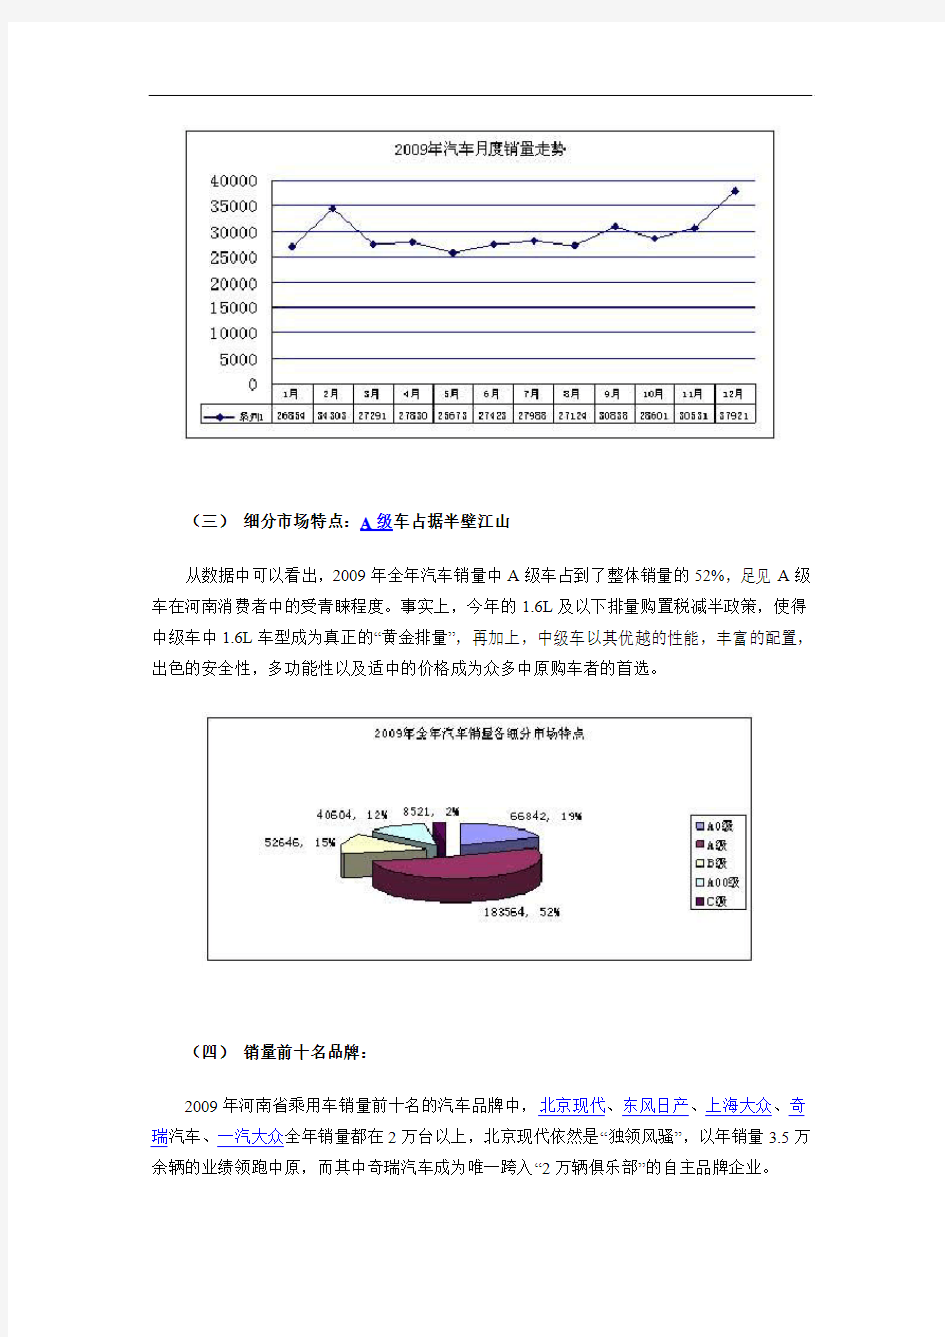 河南汽车市场消费状况分析